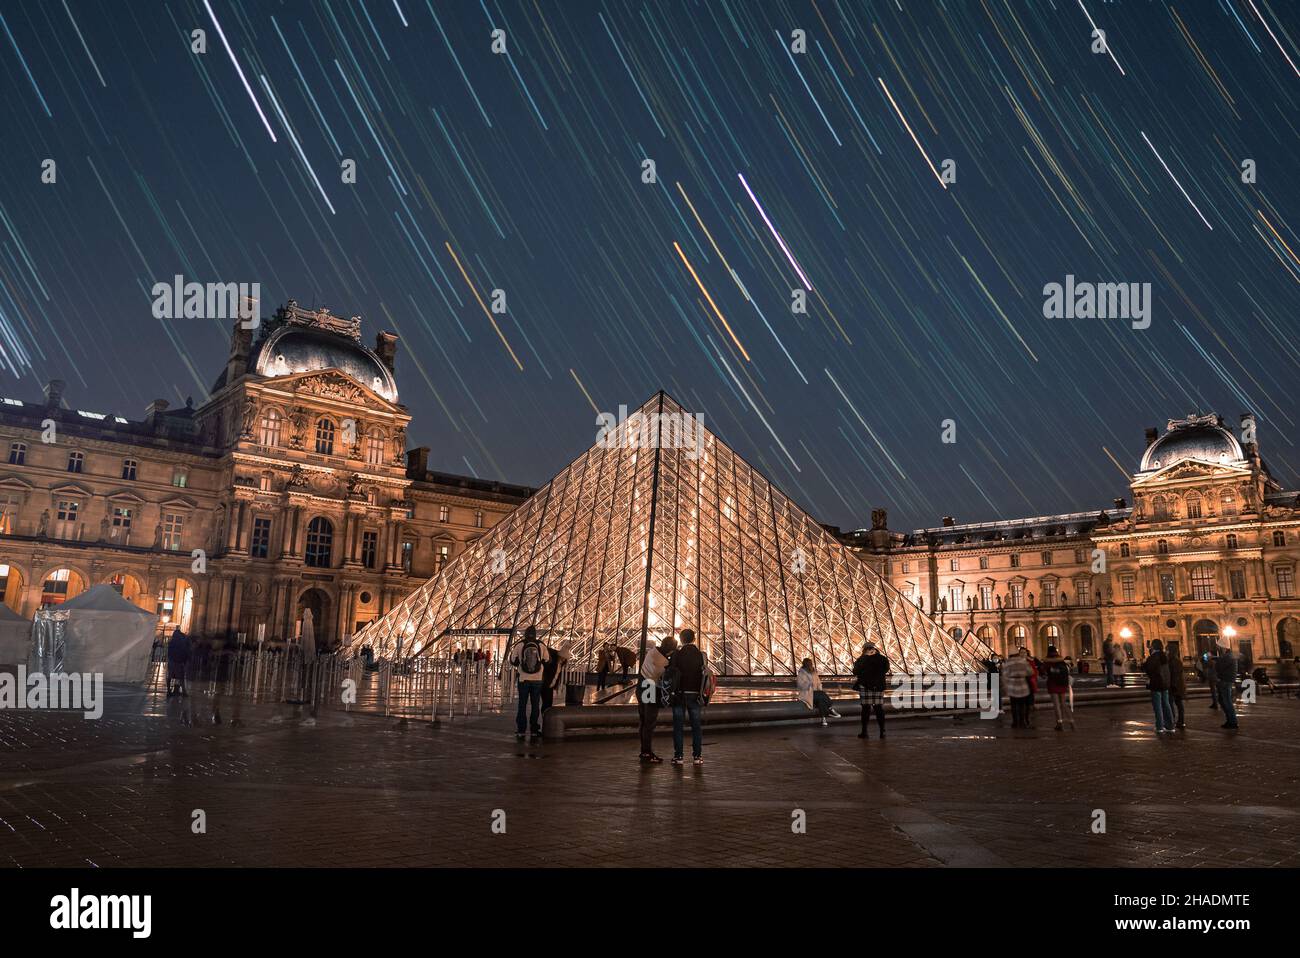 Magnifique Louvre la nuit avec des millions d'étoiles dans le ciel. Banque D'Images